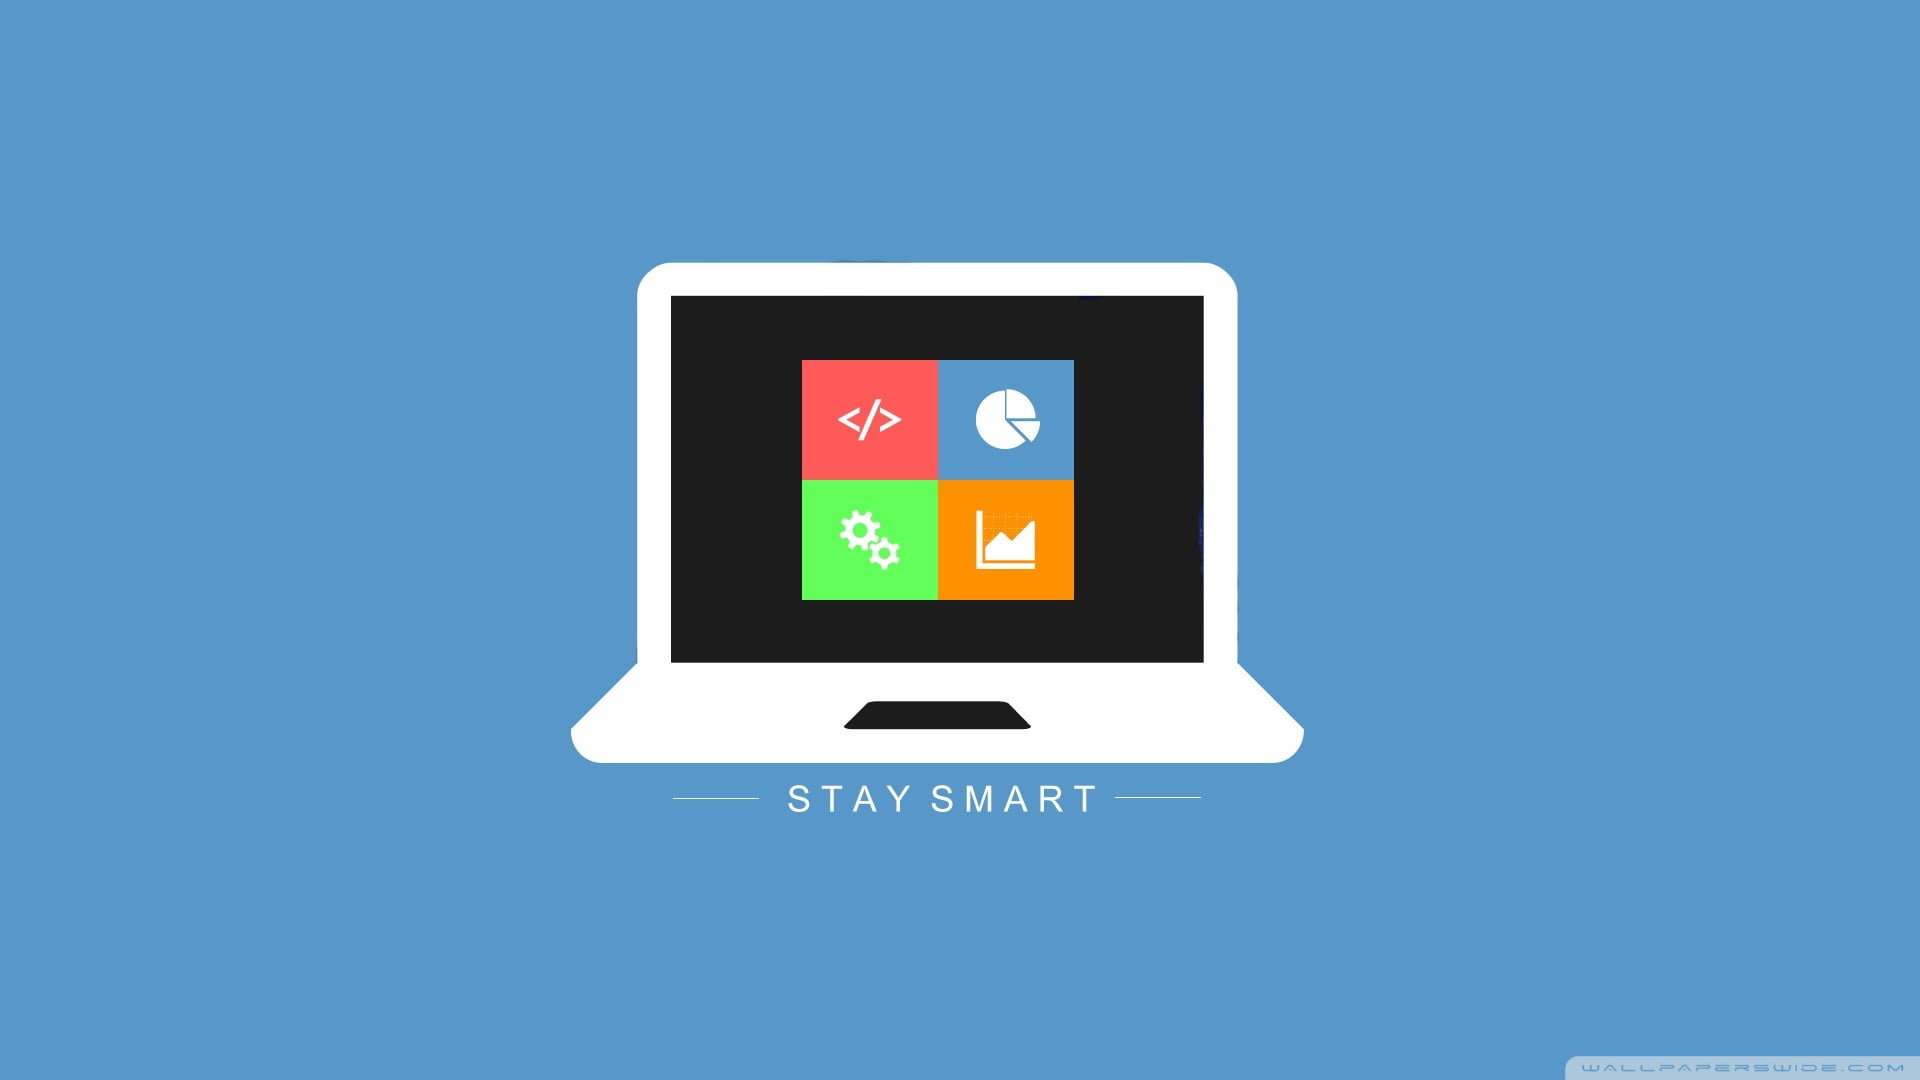 Stay Smart, computer, minimalism, communication, technology, wireless technology